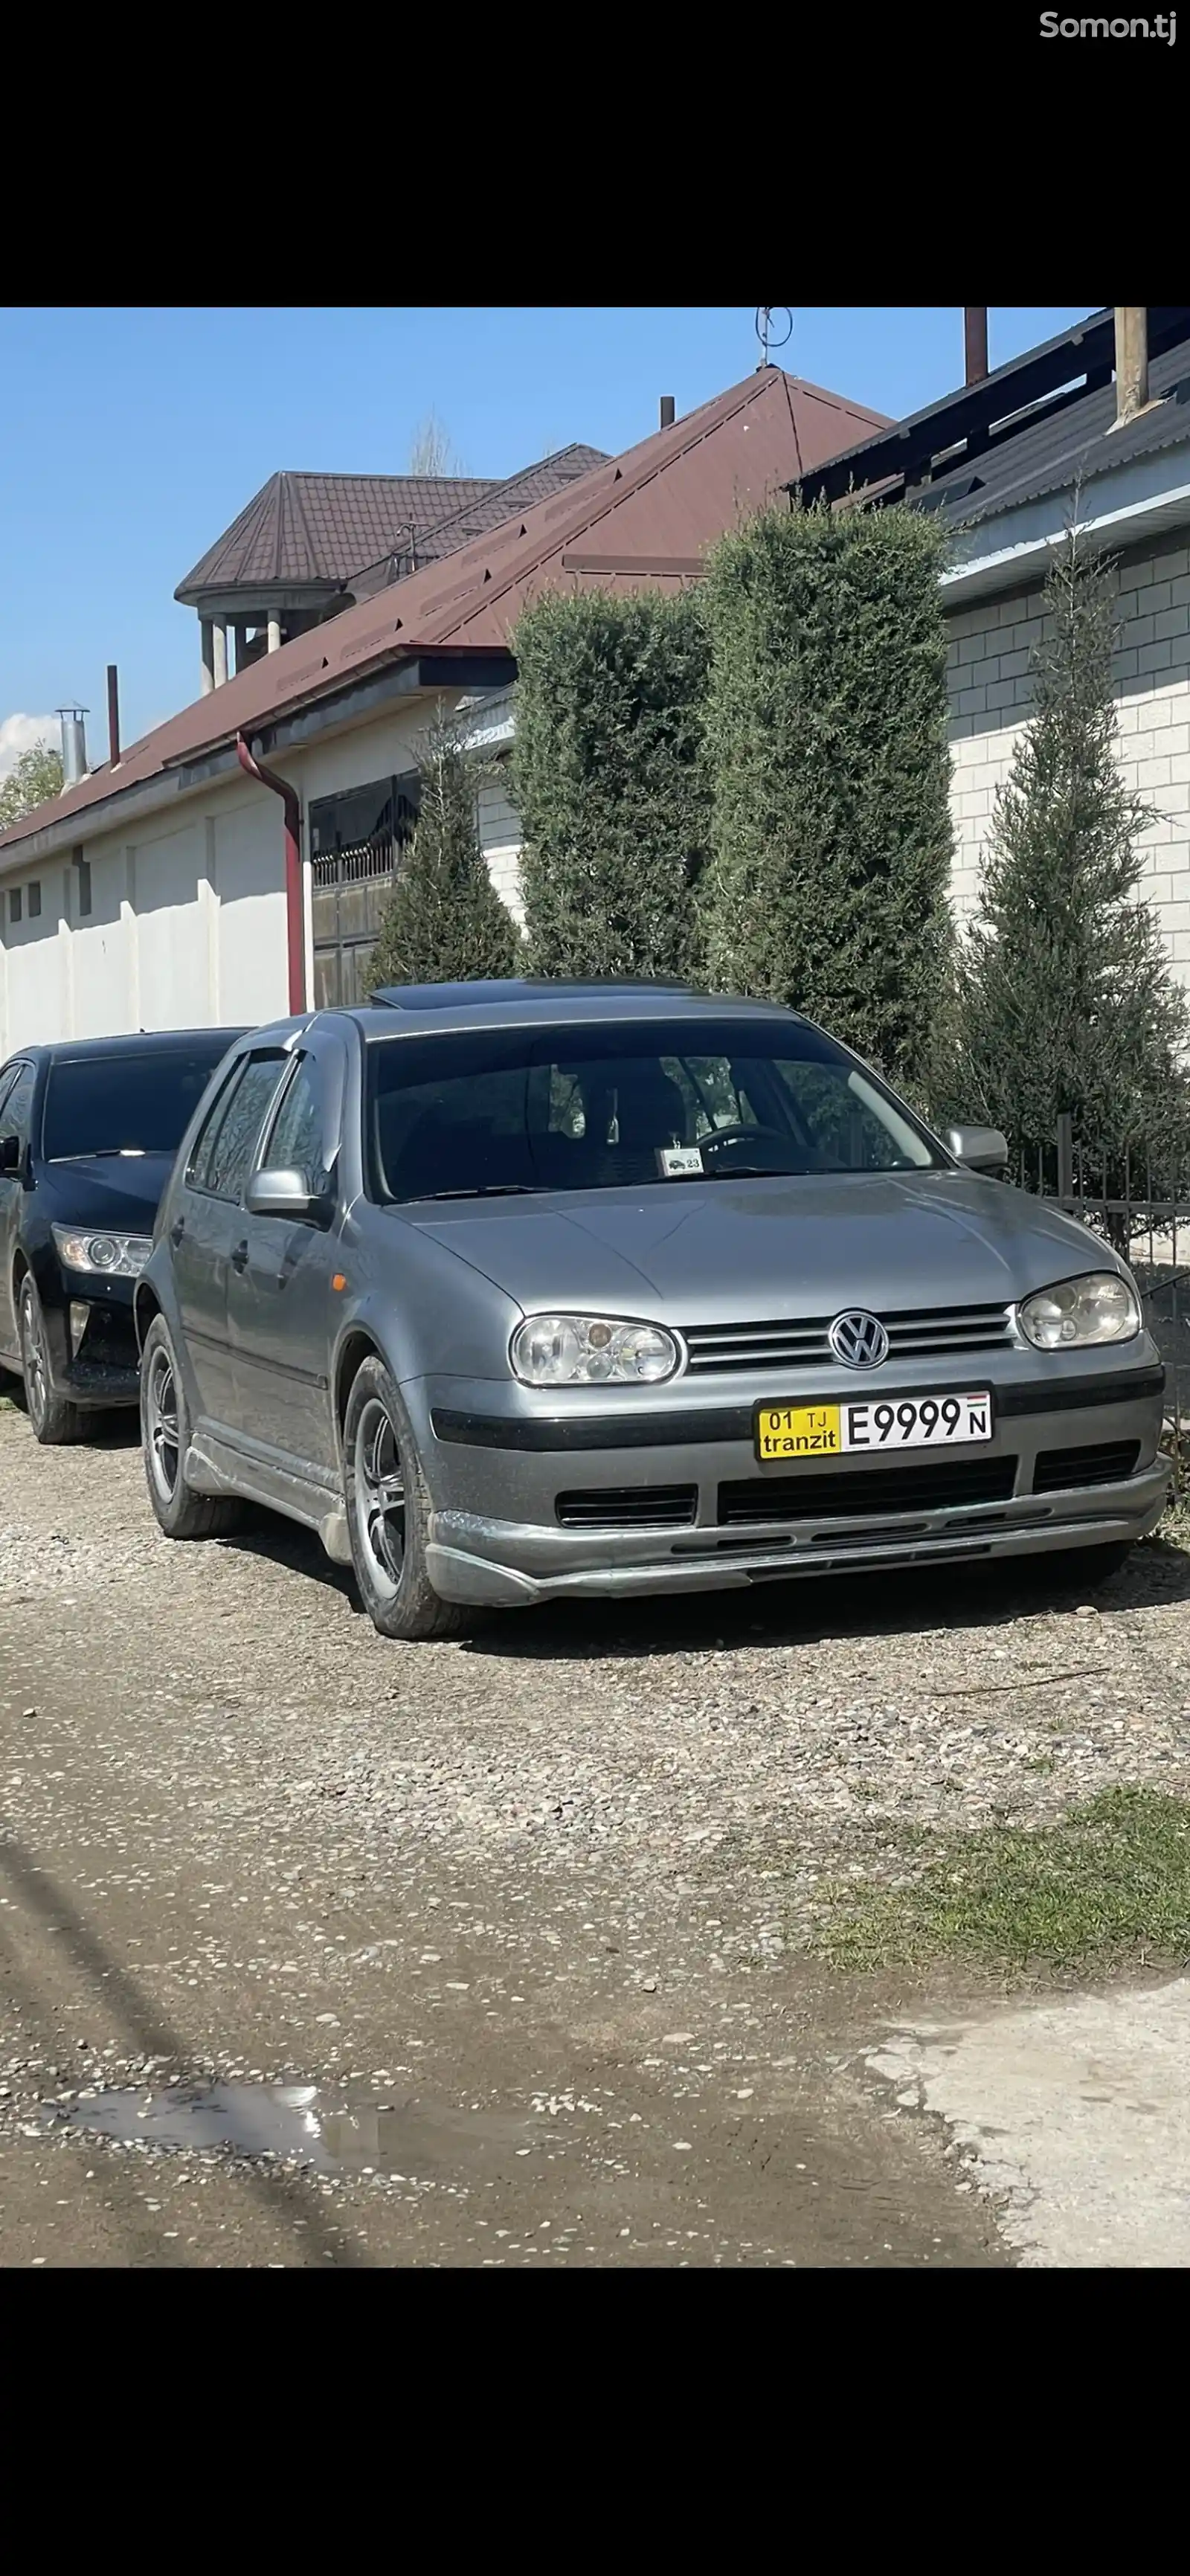 Volkswagen Golf, 1999-2